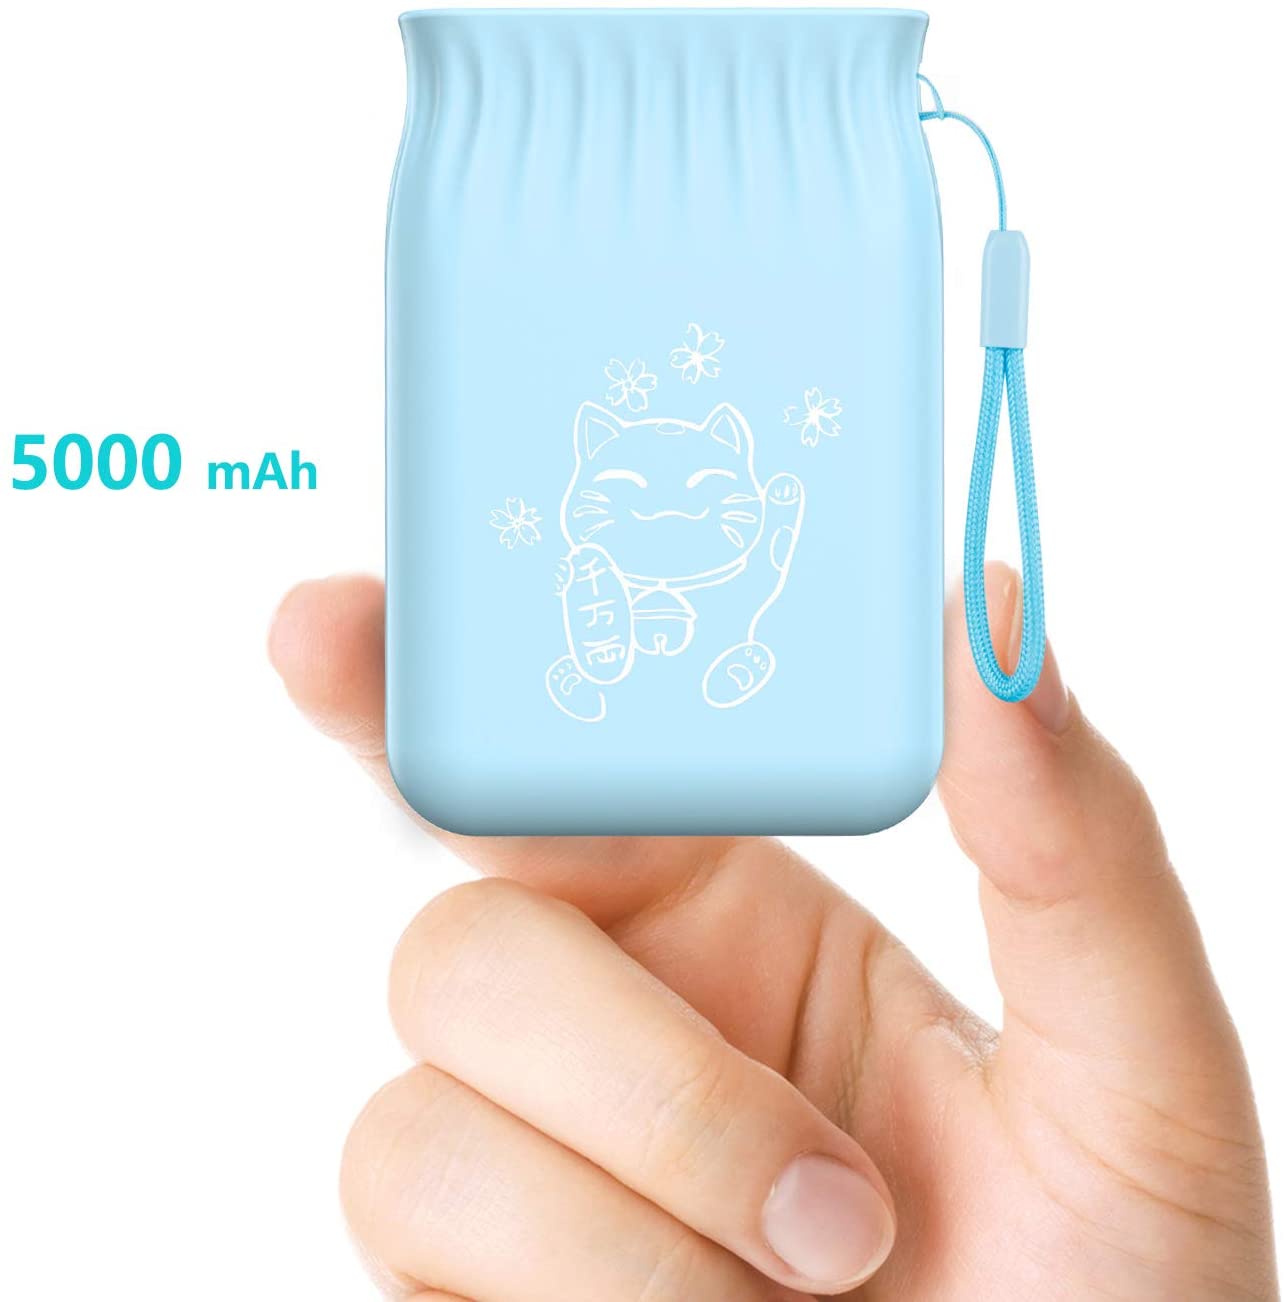 5000 Mah Power Bank Draagbare Opladen Externe Batterij Blauw Slanke Poverbank Voor Iphone Smartphone Externe Batterij Japan